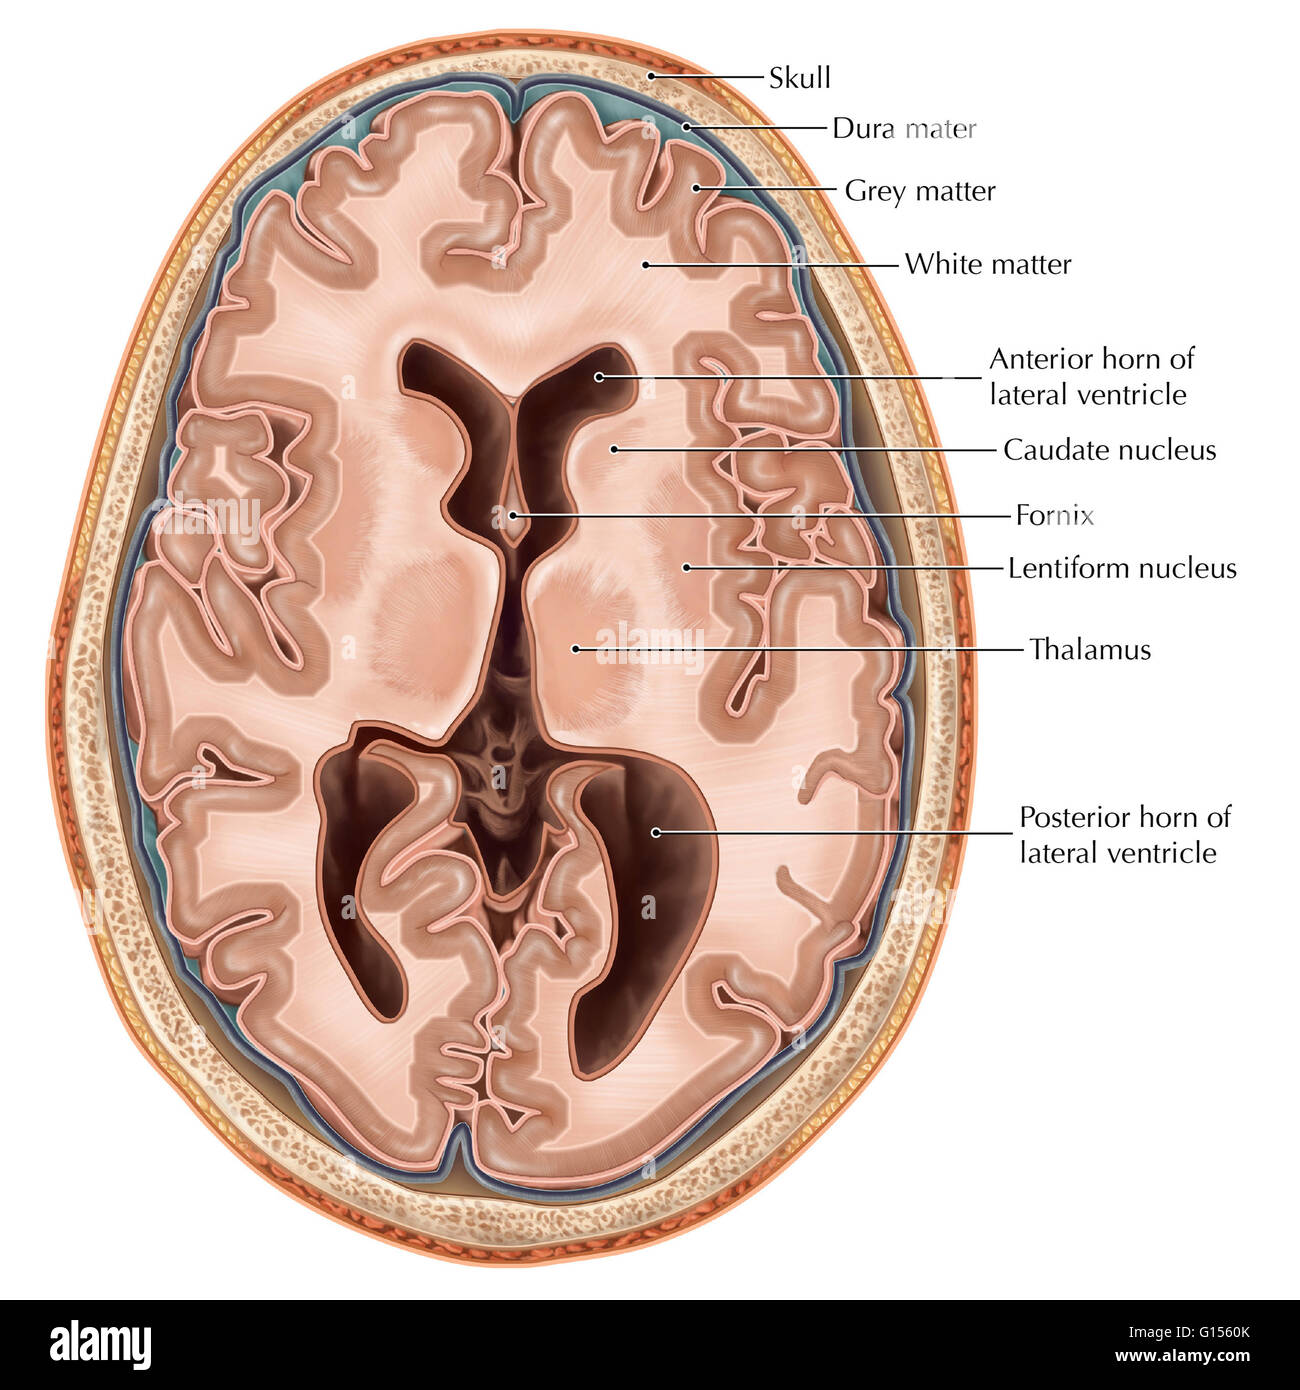 Un illustrata vista trasversale del cervello. Sono illustrati i ventricoli laterali, cavità cave che sono riempiti con fluido cerebrospinale che consentono di alimentare e sostenere il cervello e il midollo spinale. Il telencephalon è diviso in emisferi cerebrali wit Foto Stock